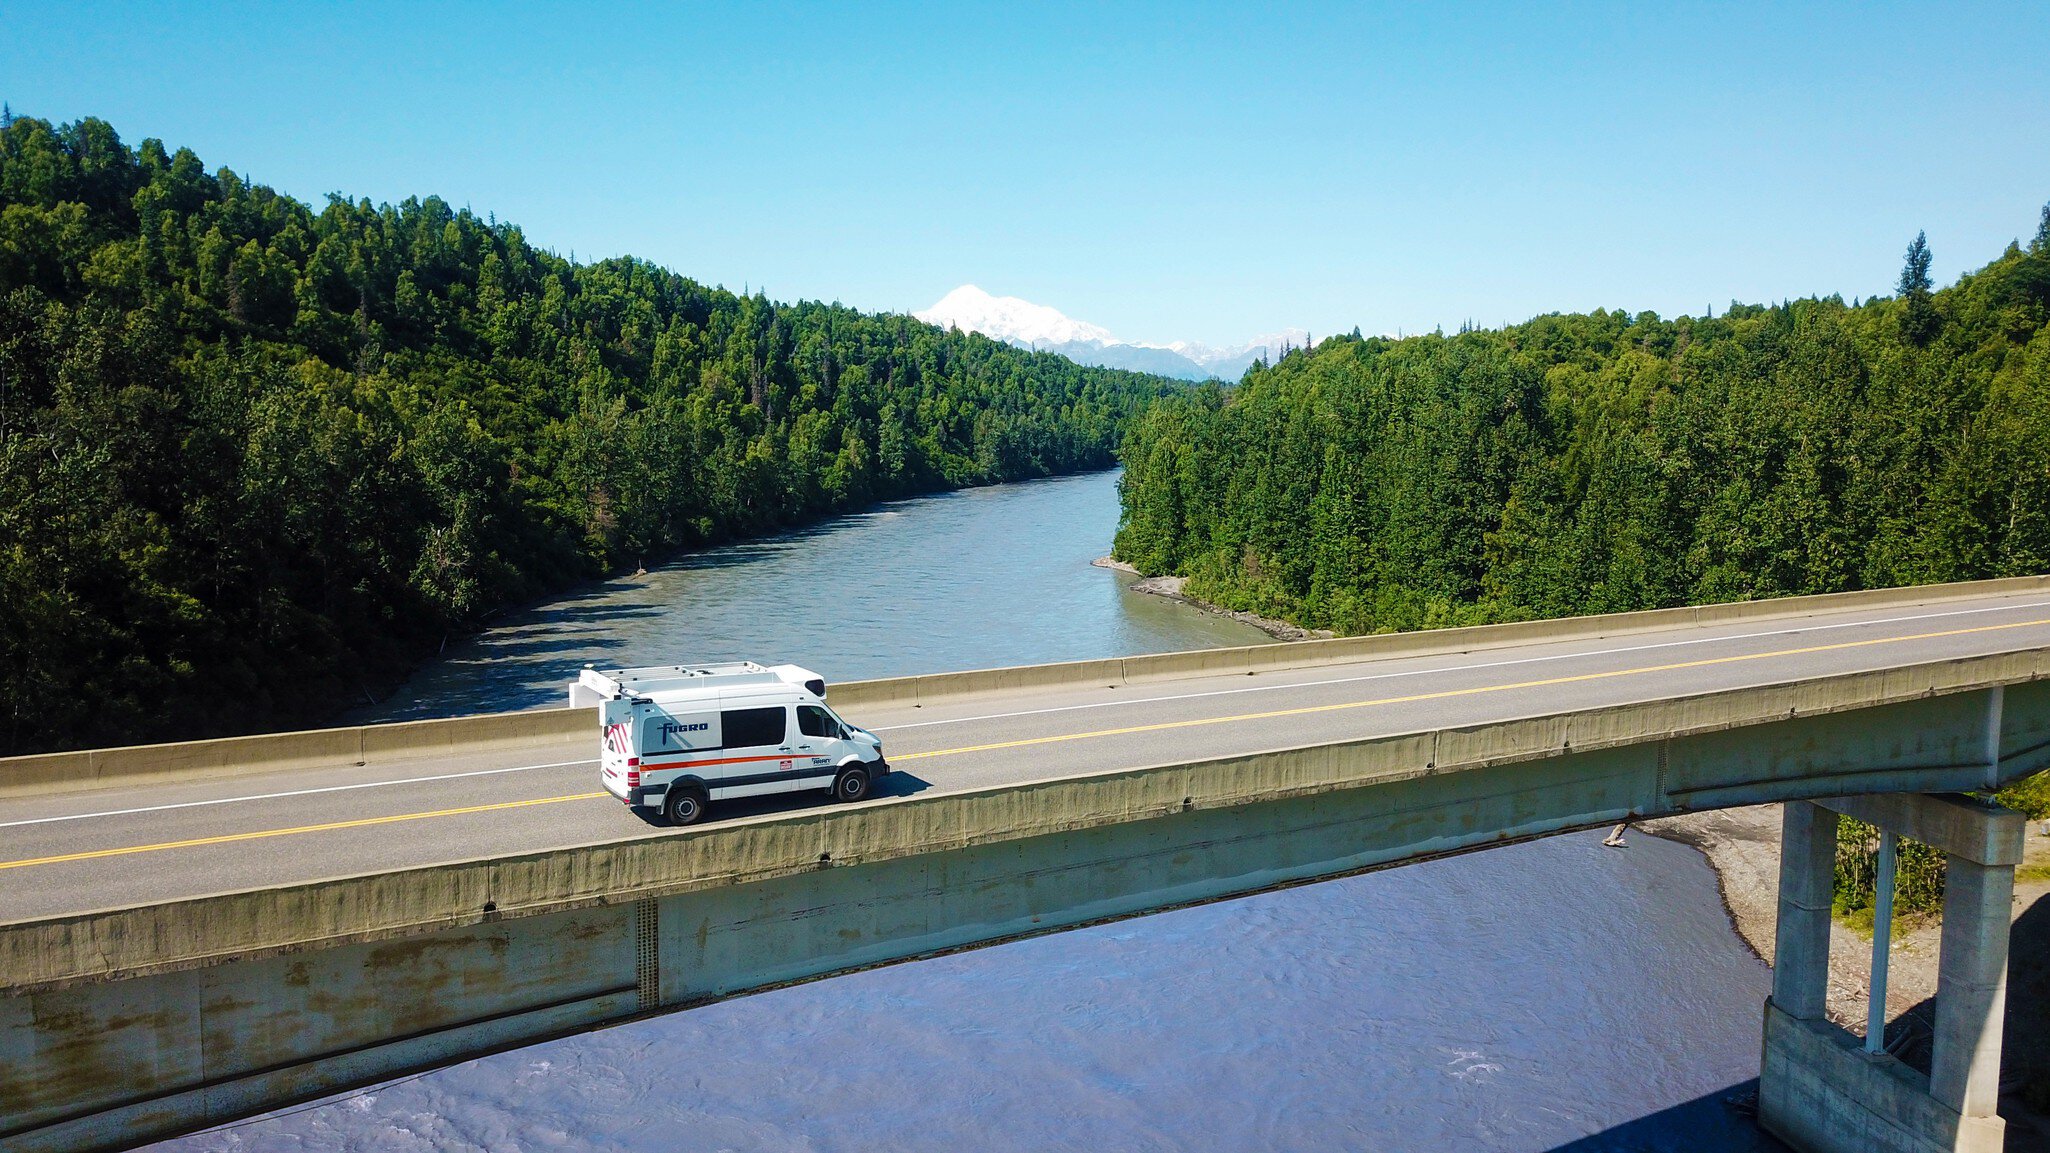 ARAN� driving across bridge in Alaska collecting pavement data and images.
DCIM\100MEDIA\DJI_0032.JPG